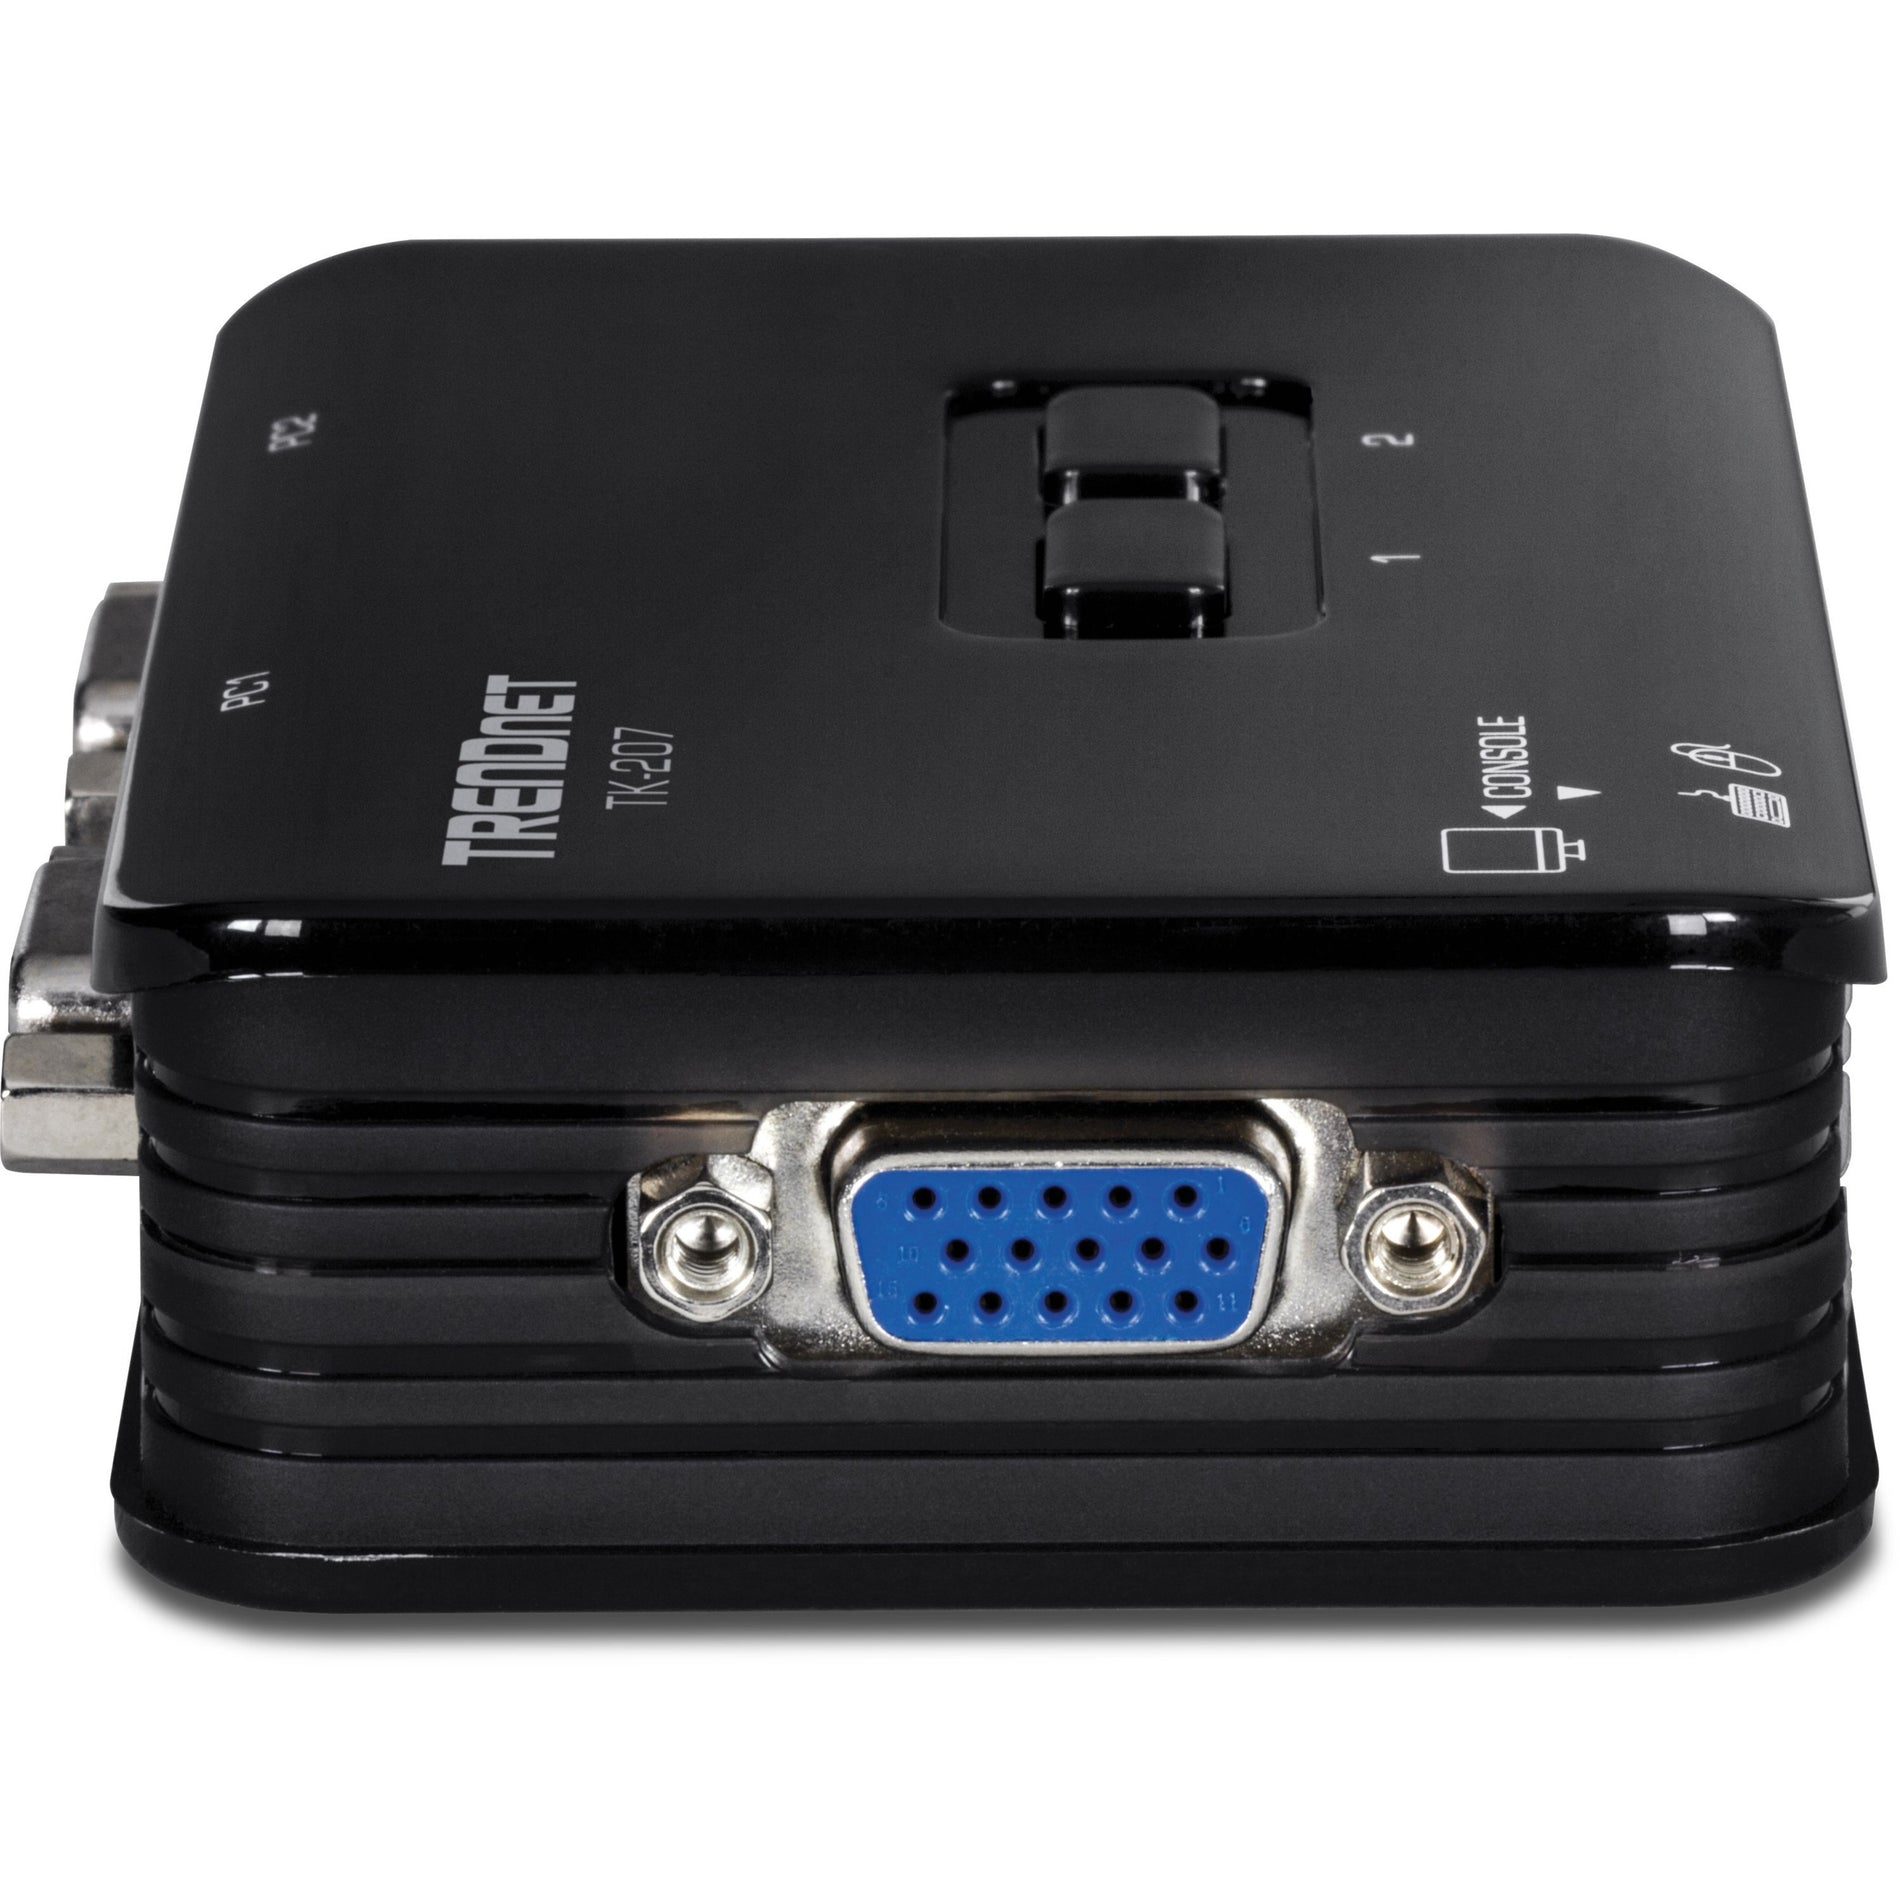 TRENDnet TK-207K 2-Port USB KVM Switch Kit, VGA/SVGA, 2048 x 1536, 2 Year Warranty, NDAA Compliant